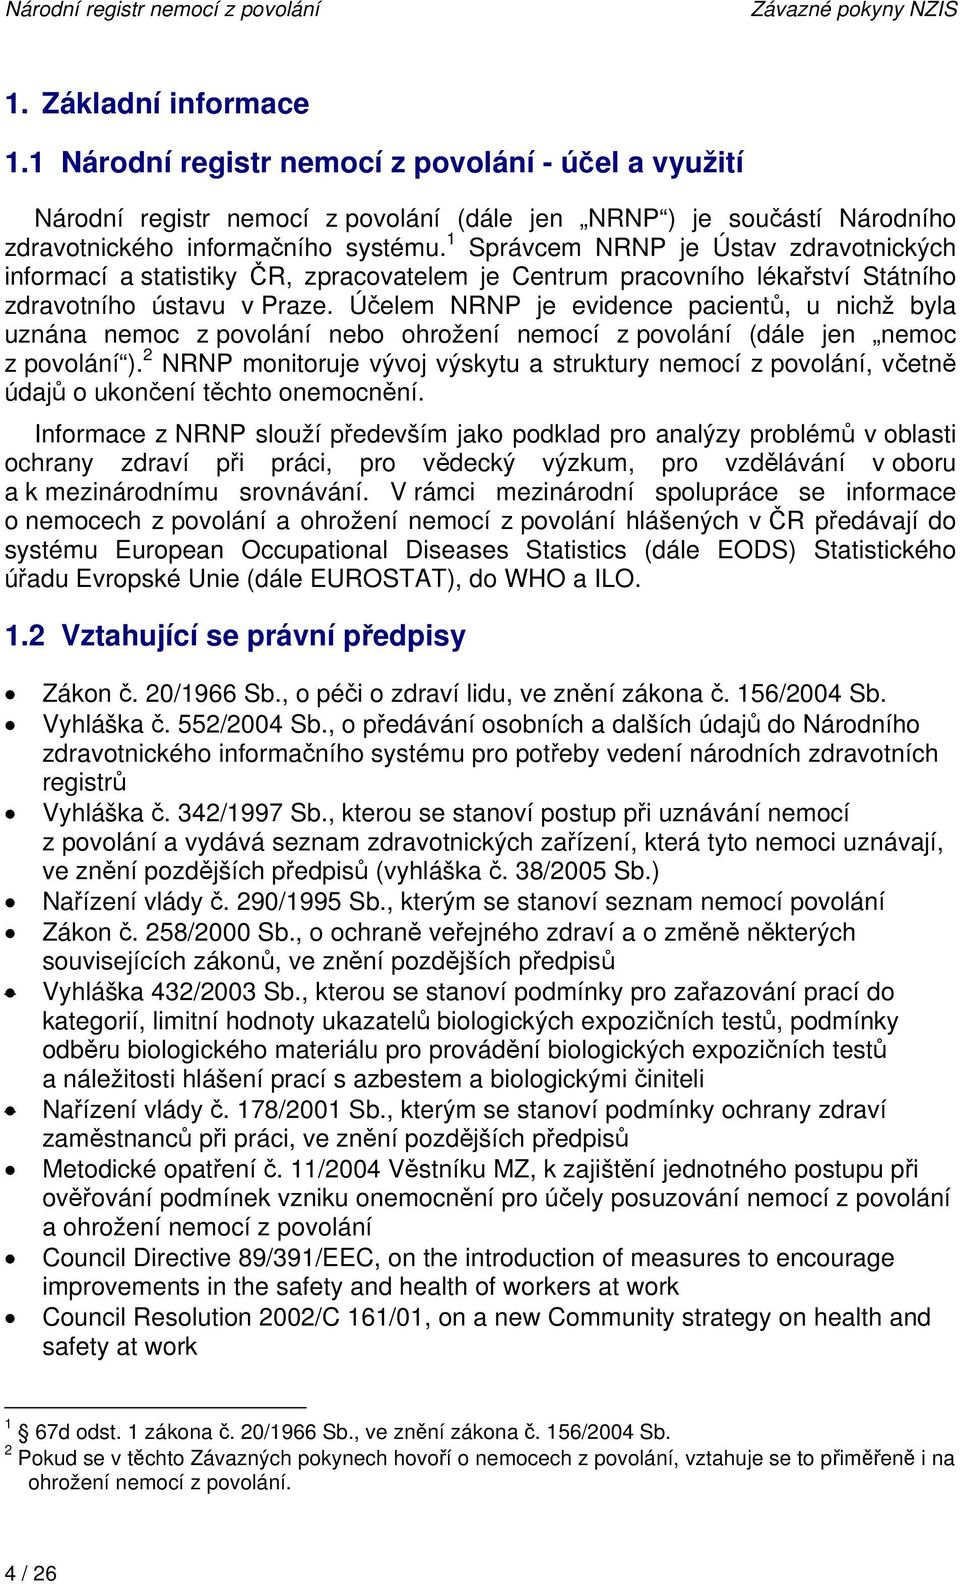 1 Správcem NRNP je Ústav zdravotnických informací a statistiky ČR, zpracovatelem je Centrum pracovního lékařství Státního zdravotního ústavu v Praze.